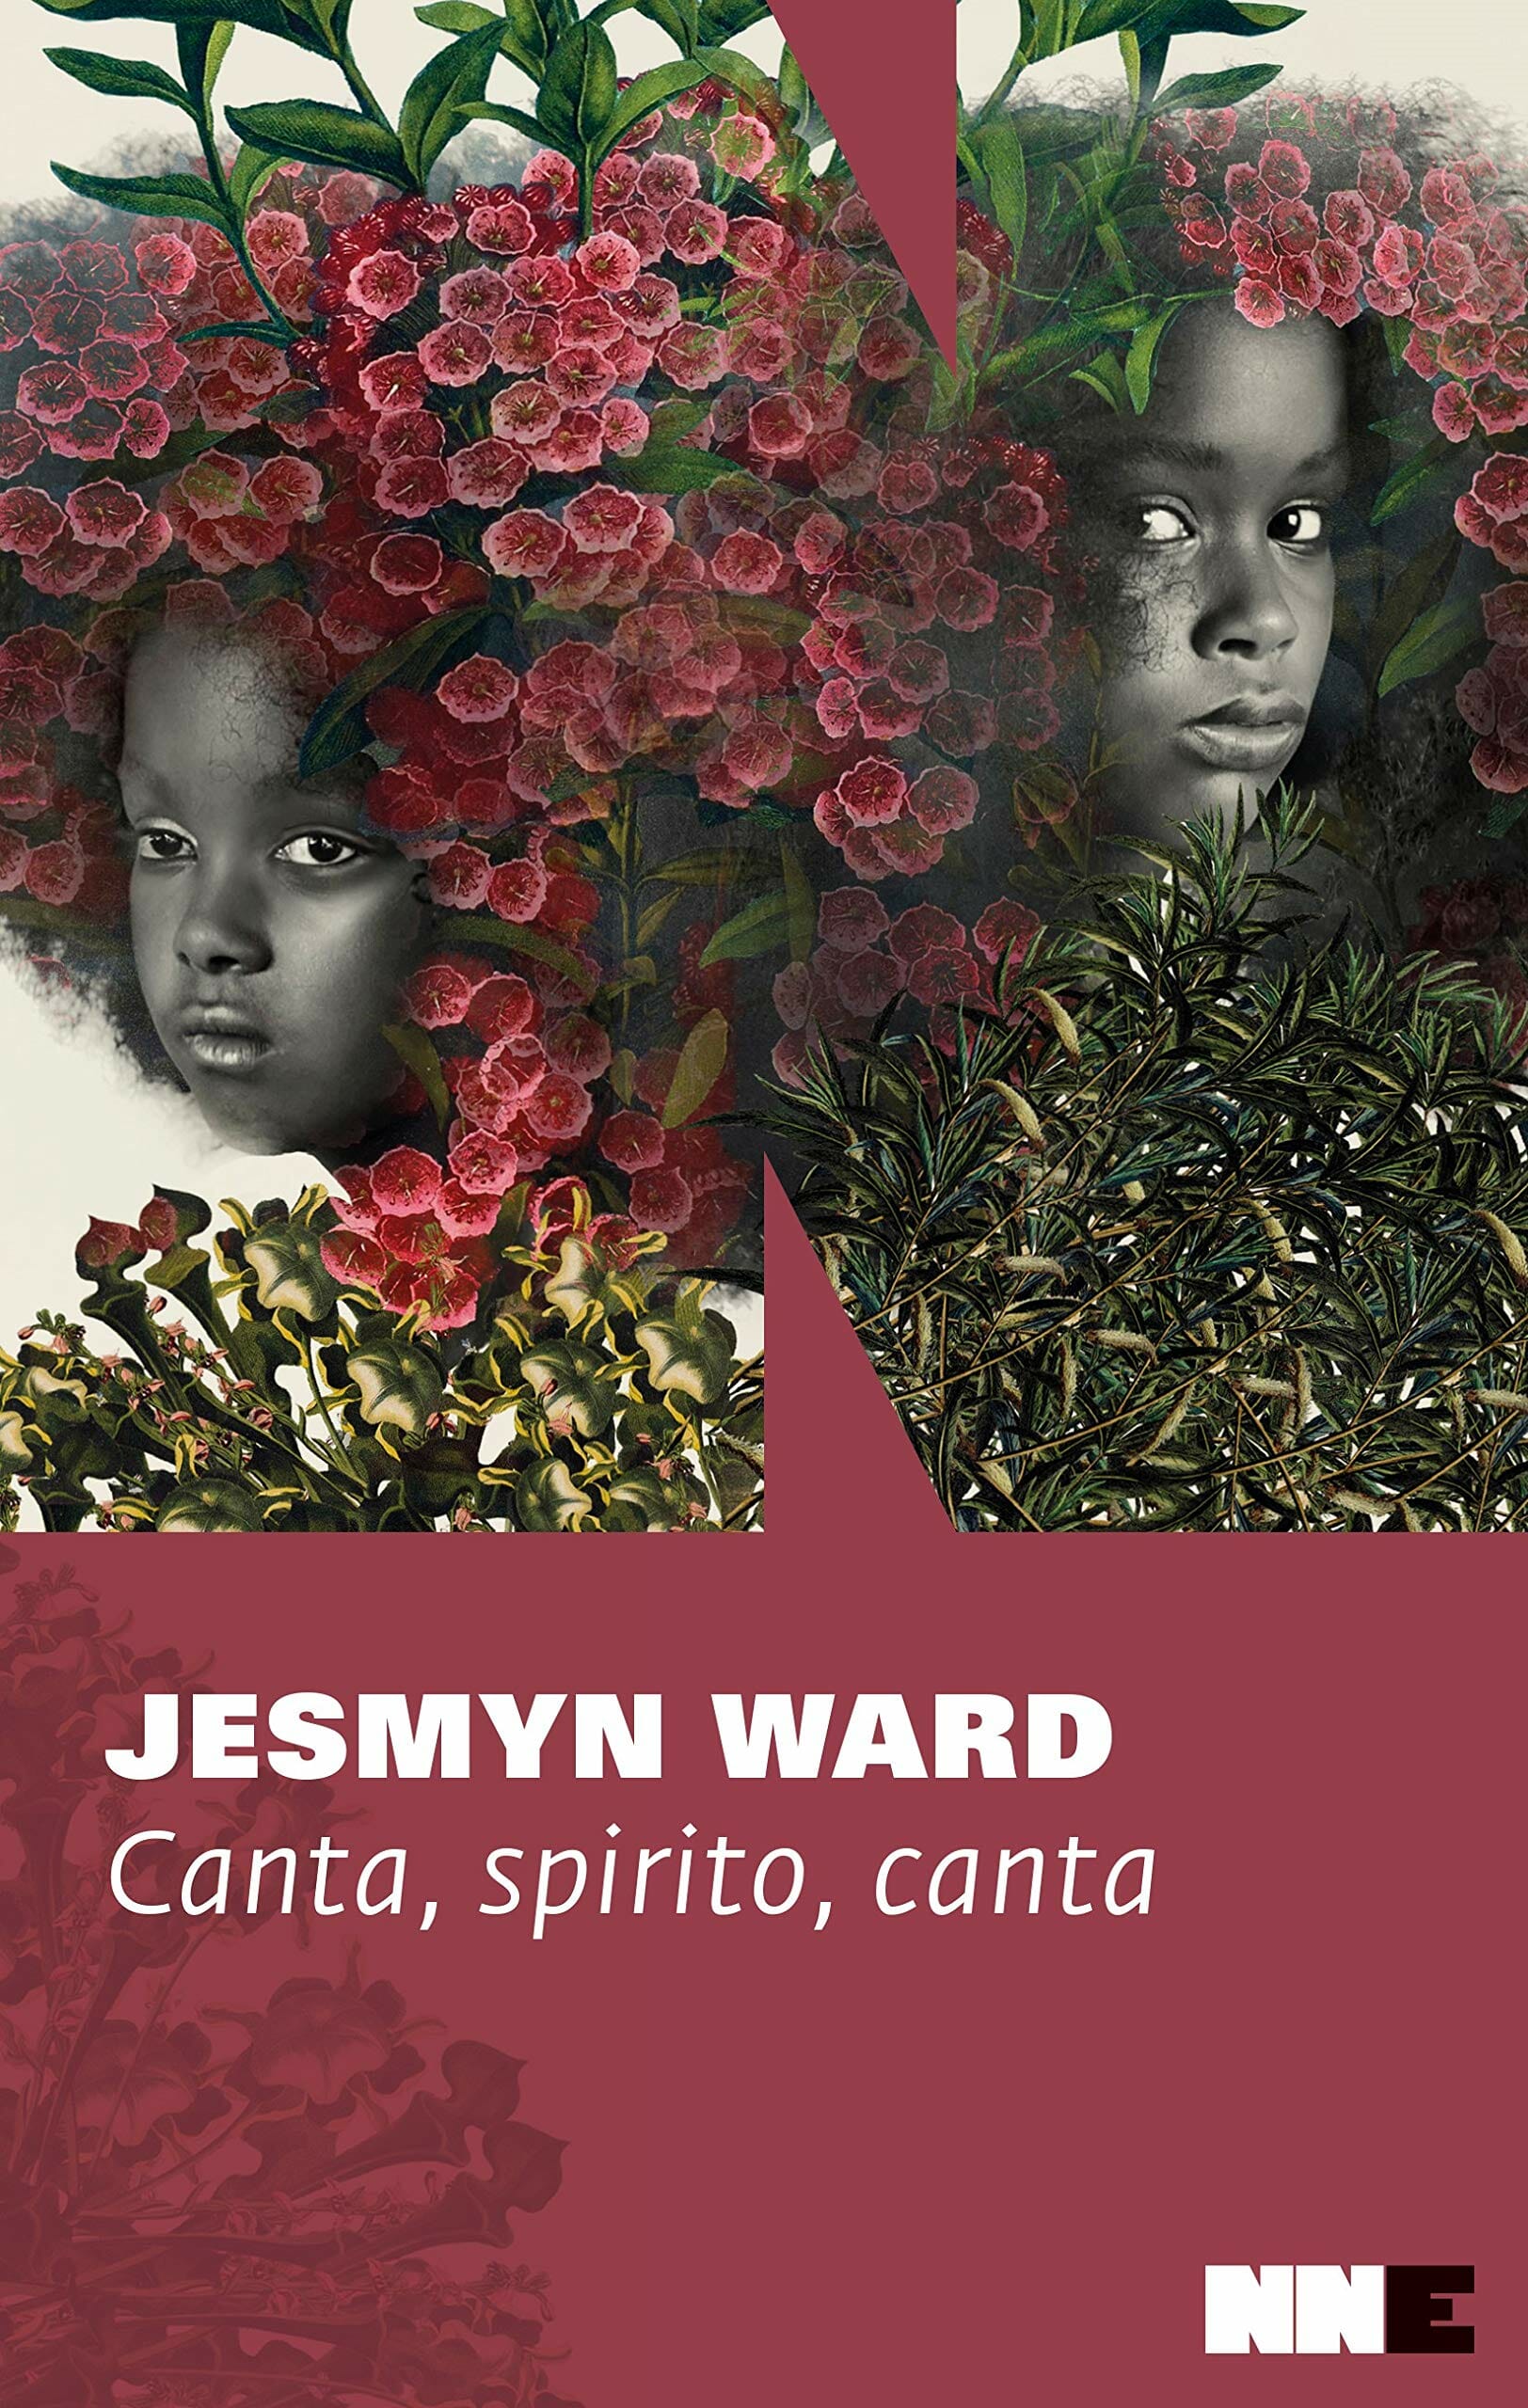 Jesmyn Ward